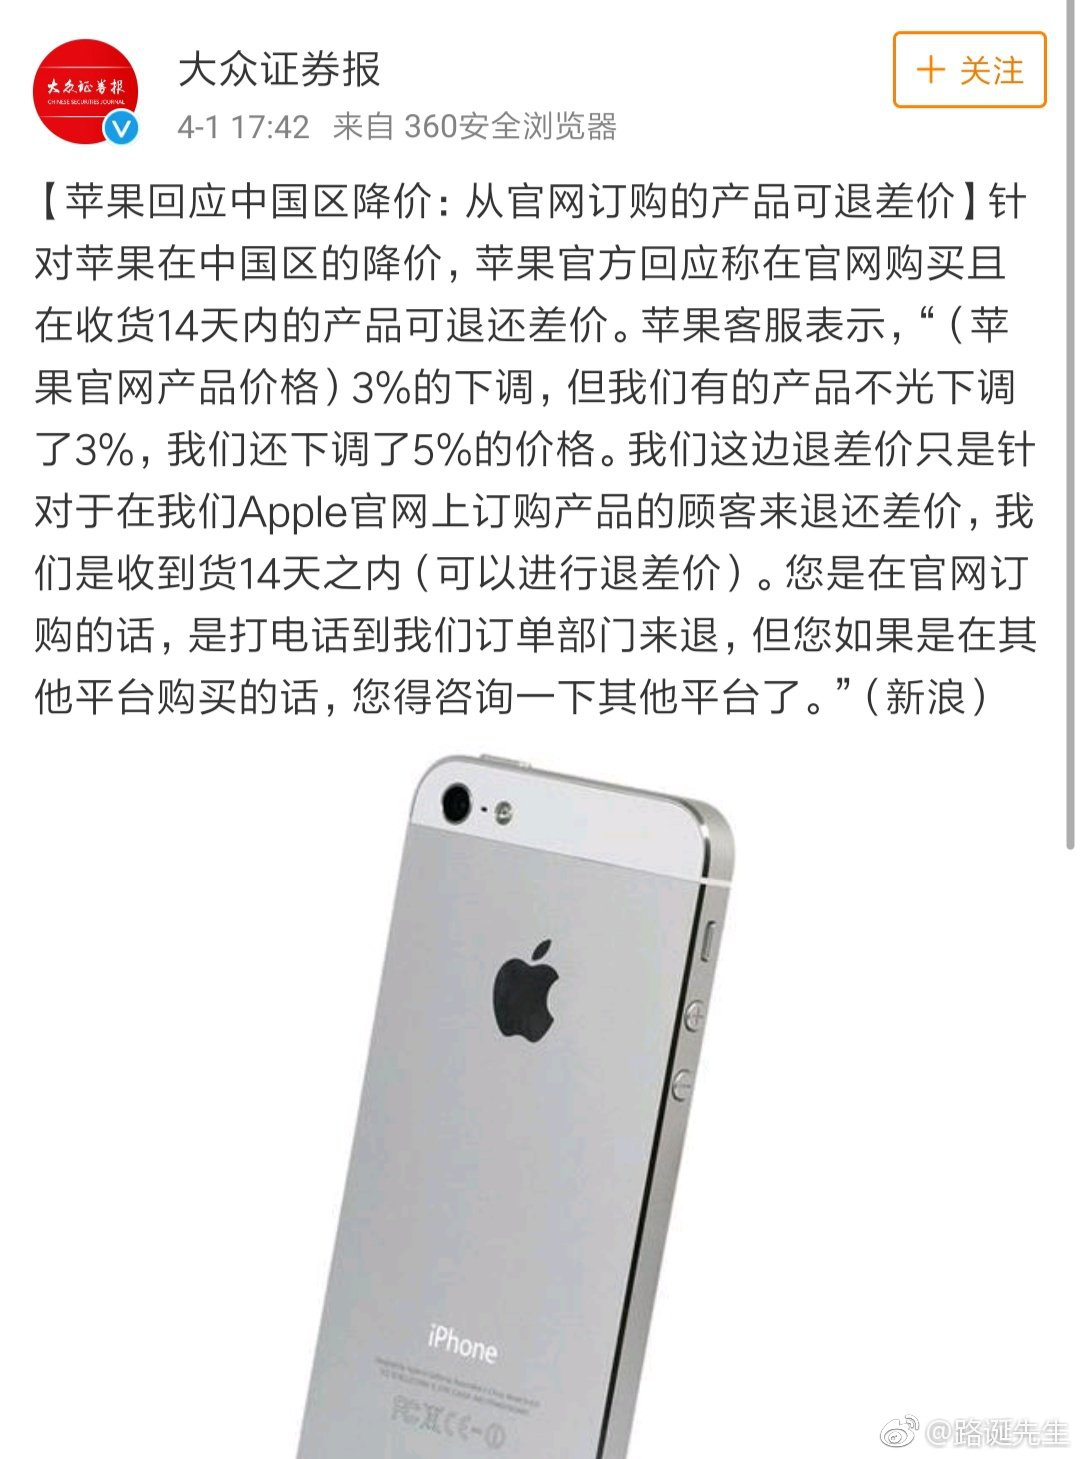 包含郑州苹果降价最新信息新闻的词条